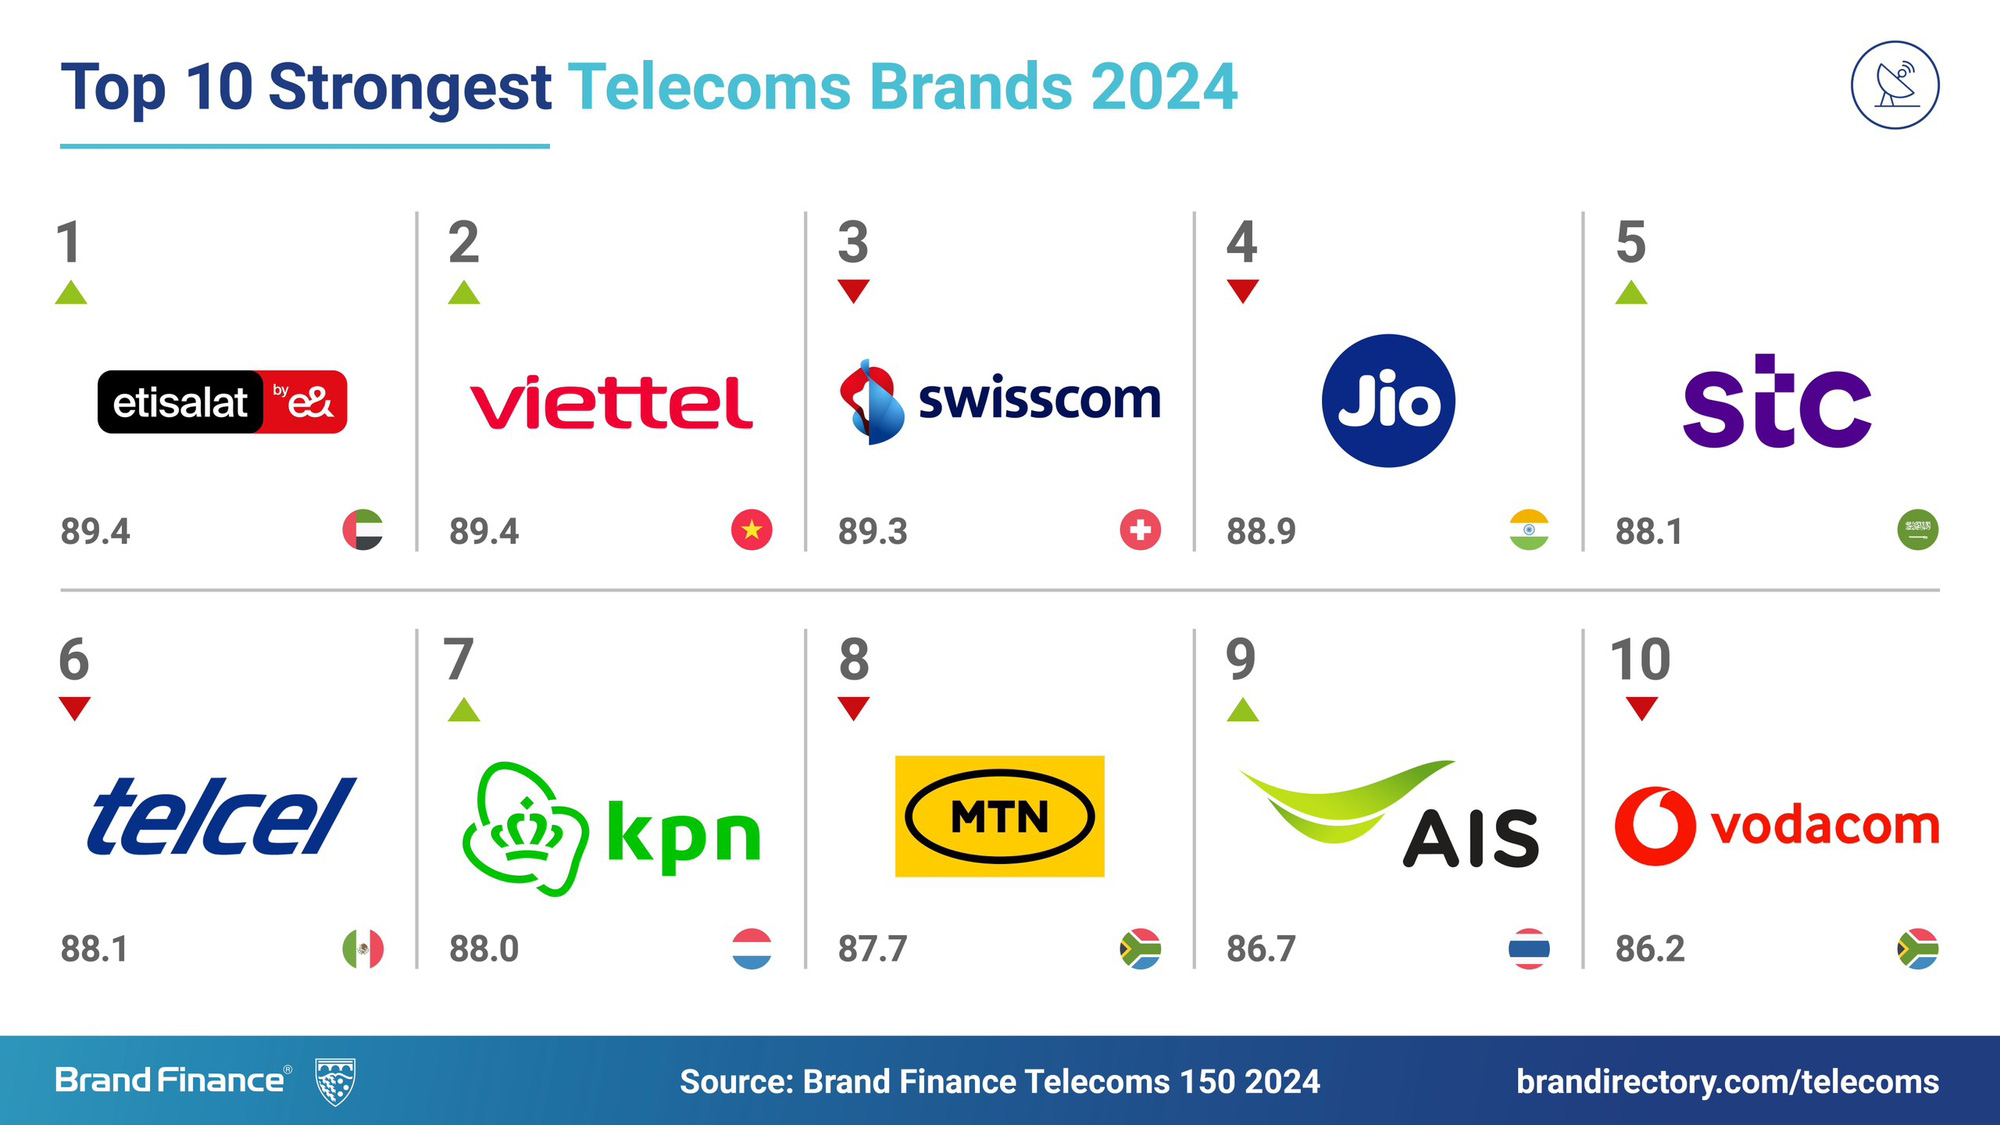 Viettel trở thành thương hiệu viễn thông mạnh thứ 2 thế giới theo đánh giá của Brand Finance